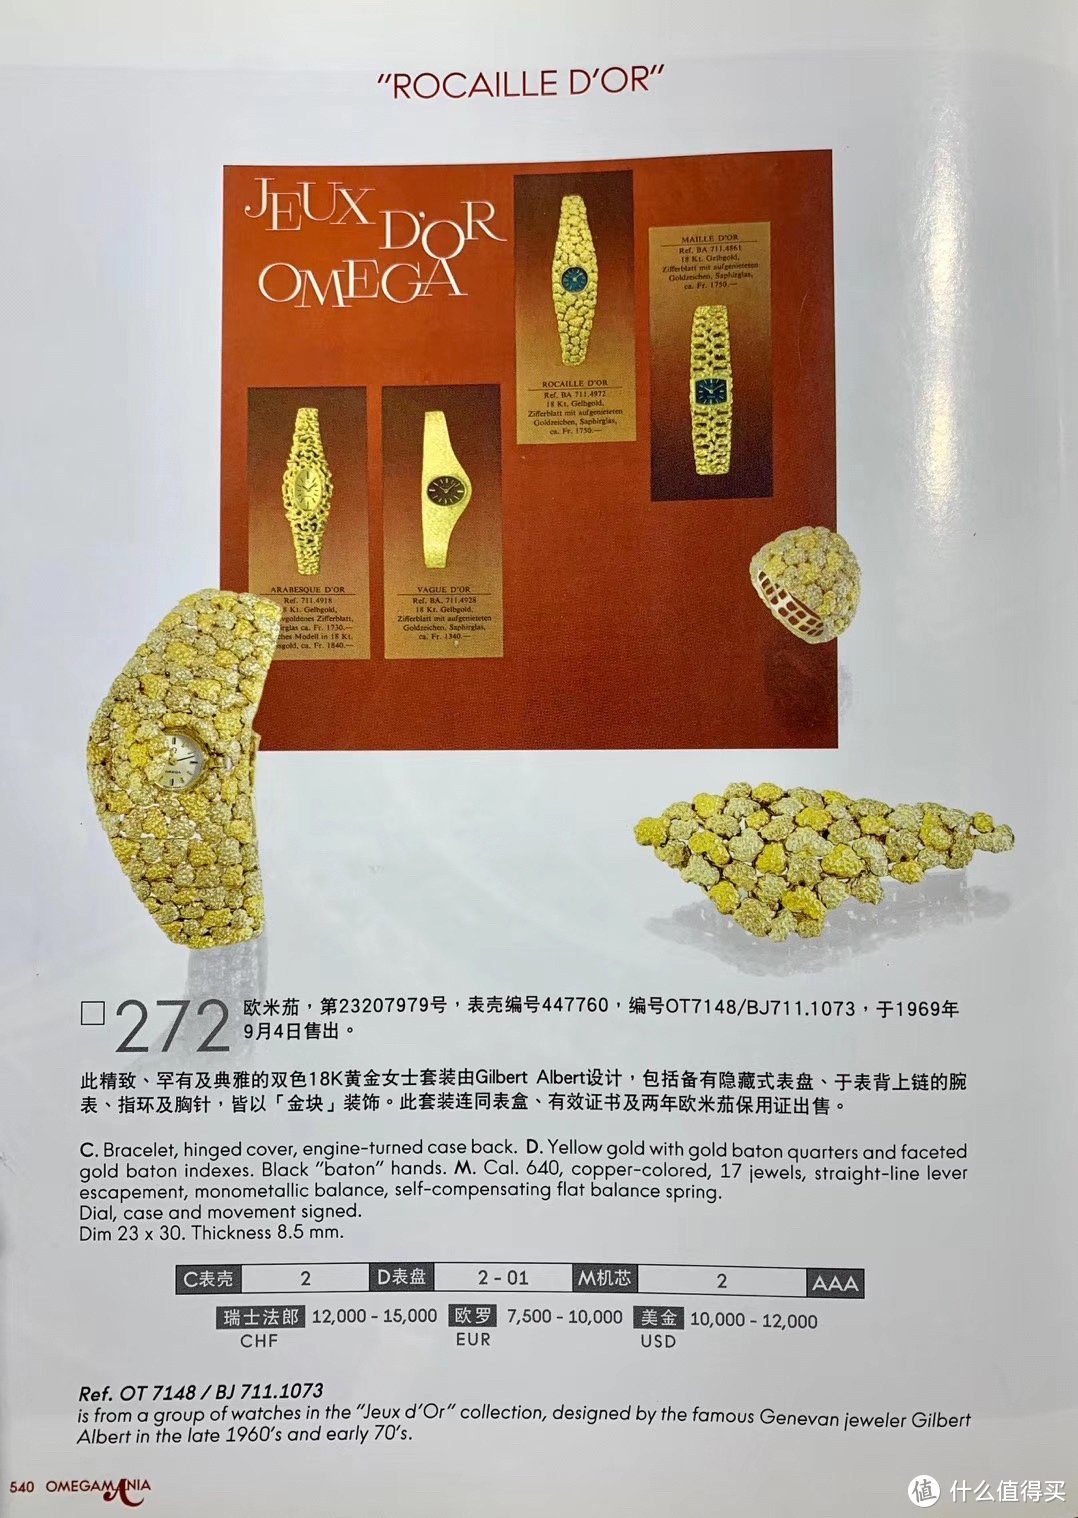 2007年香港安帝古伦拍卖行欧米茄腕表专场中，同系列预估价1.2万美元